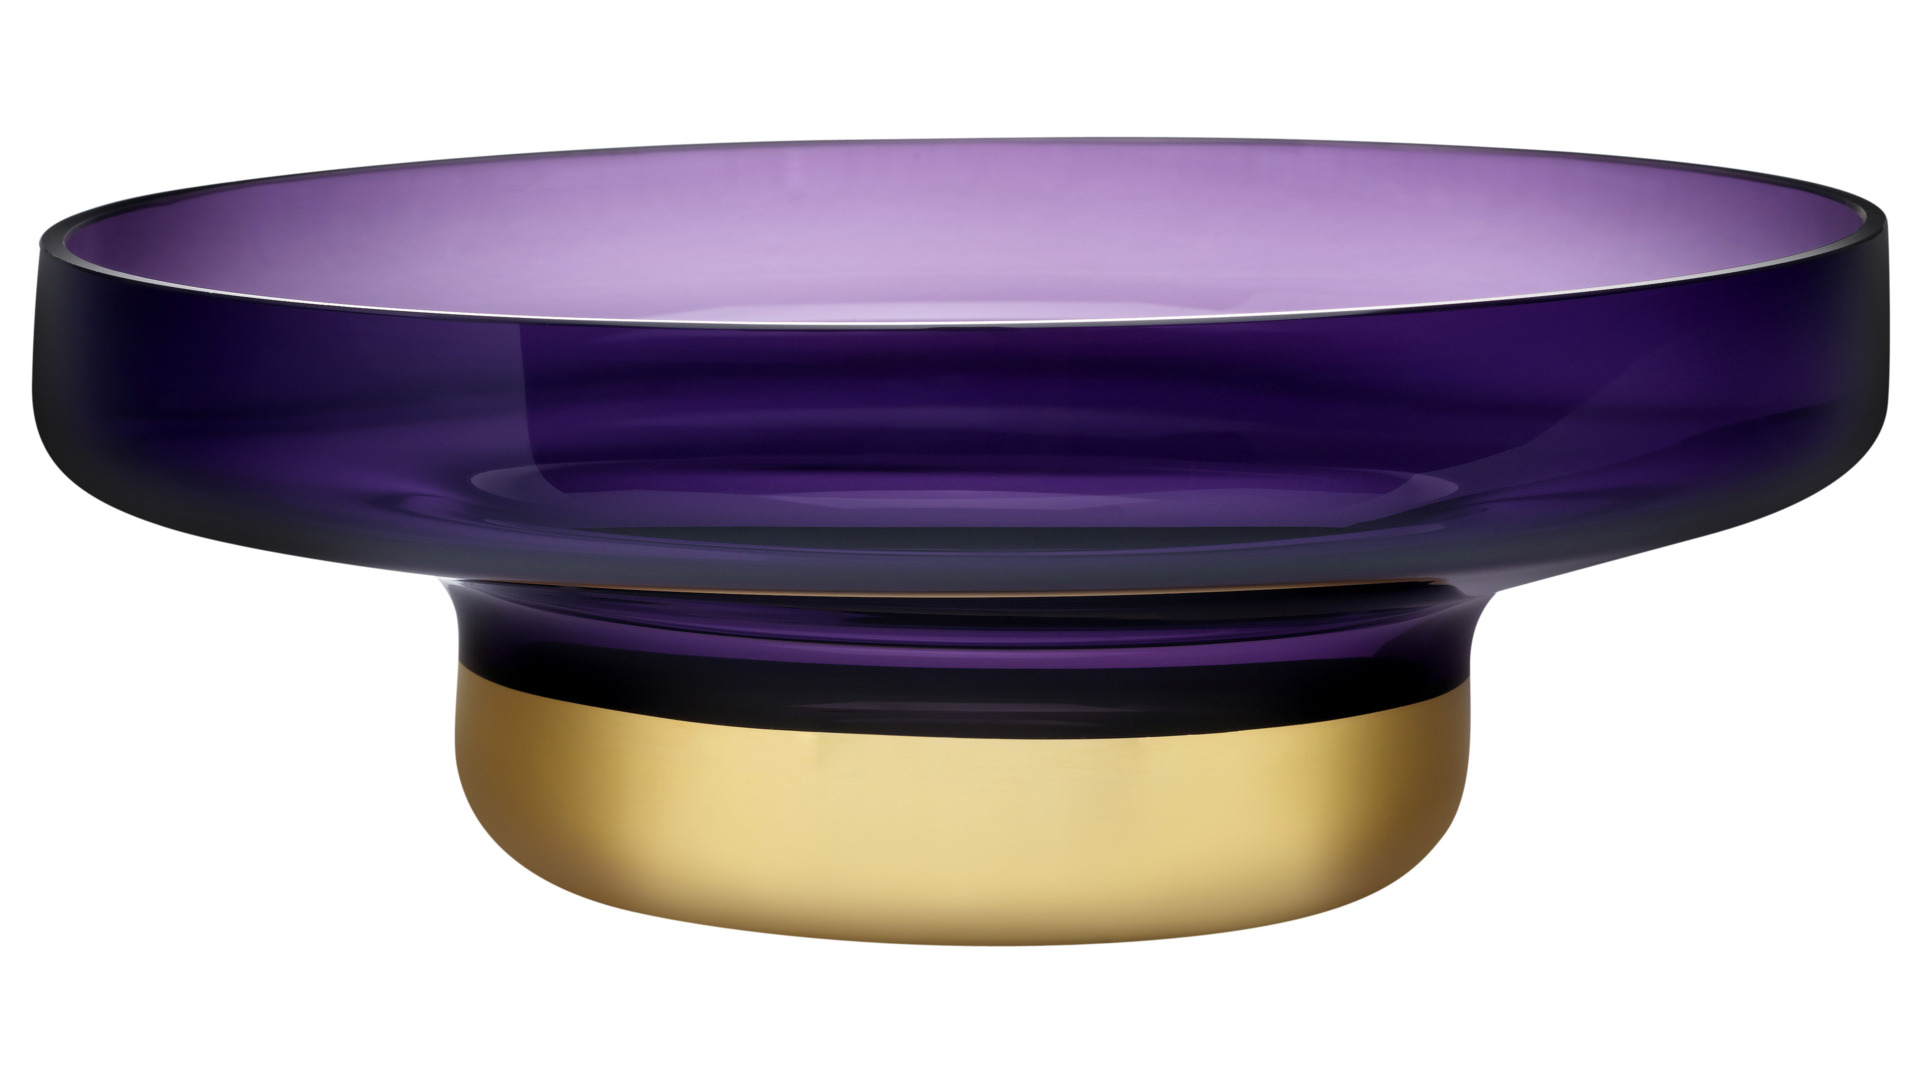 Чаша декоративная Nude Glass Контур d36 см, фиолетовая с золотым дном, стекло хрустальное